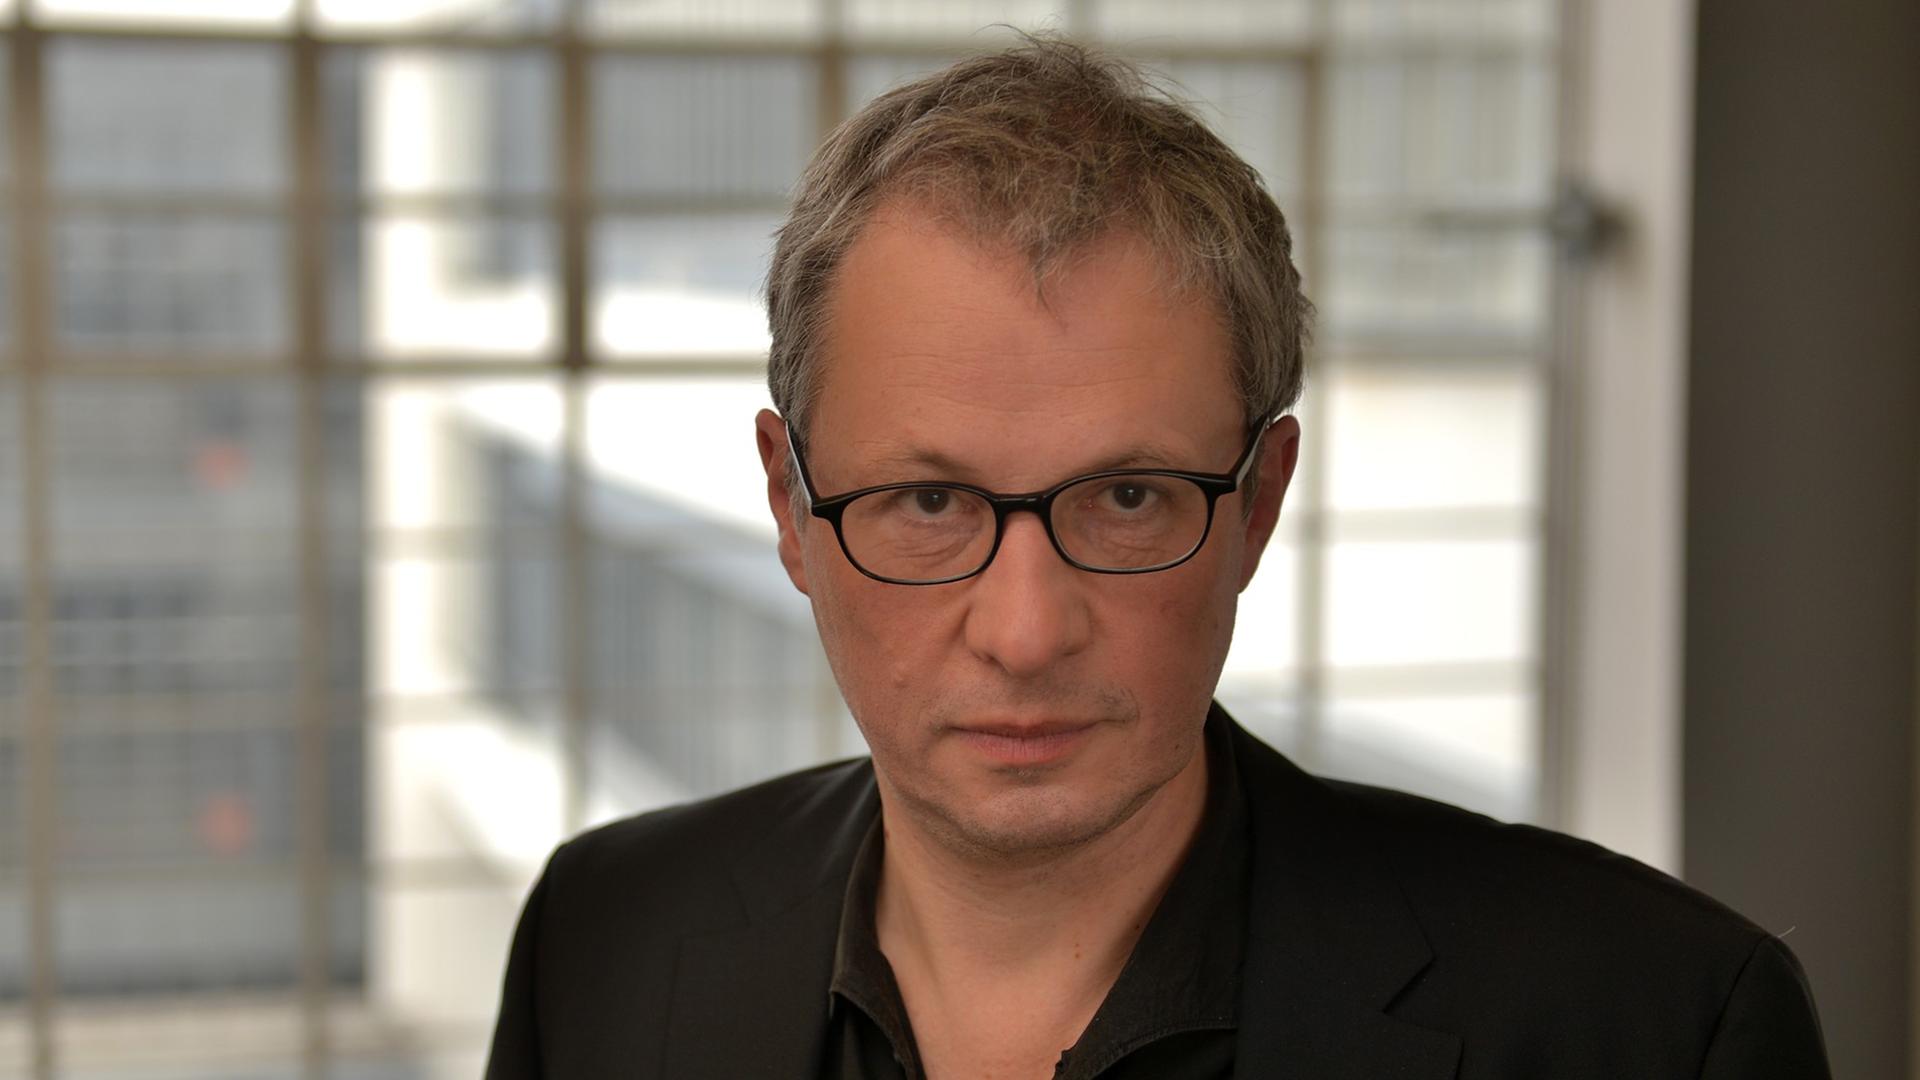 Der Direktor der Stiftung Bauhaus Dessau, Philipp Oswalt, aufgenommen im Februar 2014 kurz vor seinem Abschied.